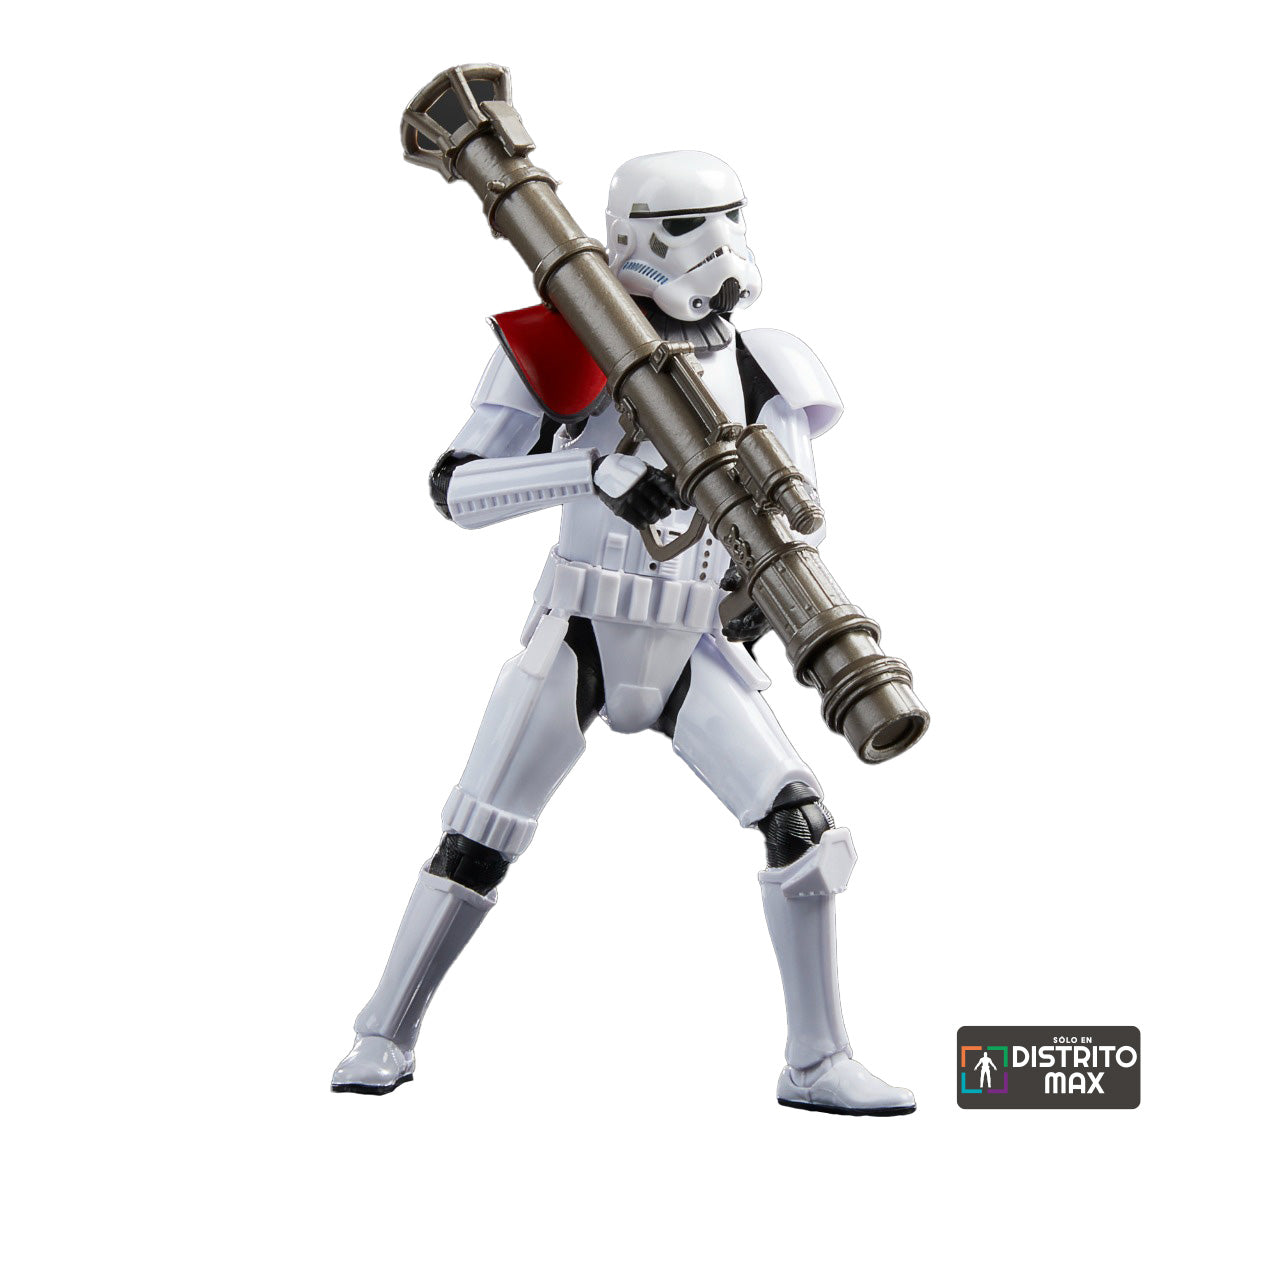 Star Wars The Black Series Gaming Greats: Jedi Fallen Order - Stormtrooper Con Lanzacohete Exclusivo Distrito Max